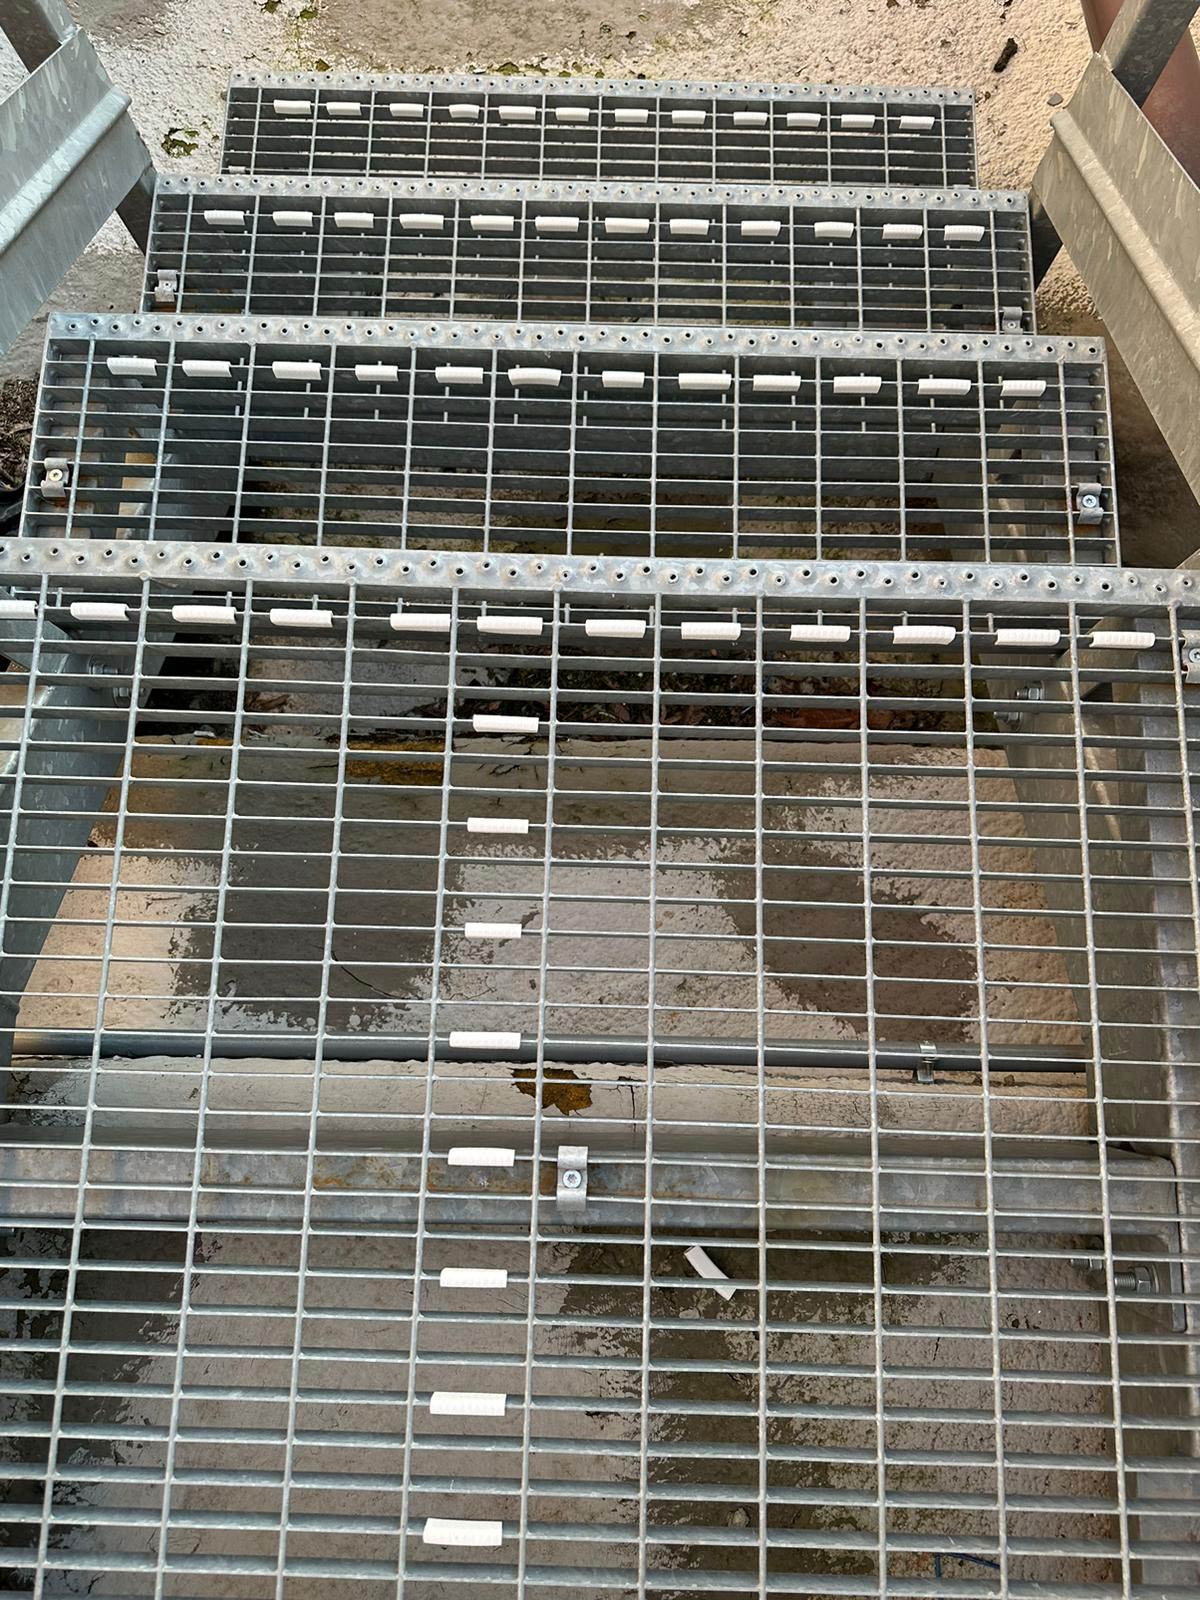 Posizionamento delle clips bianche antipanico sulle scale in grigliato